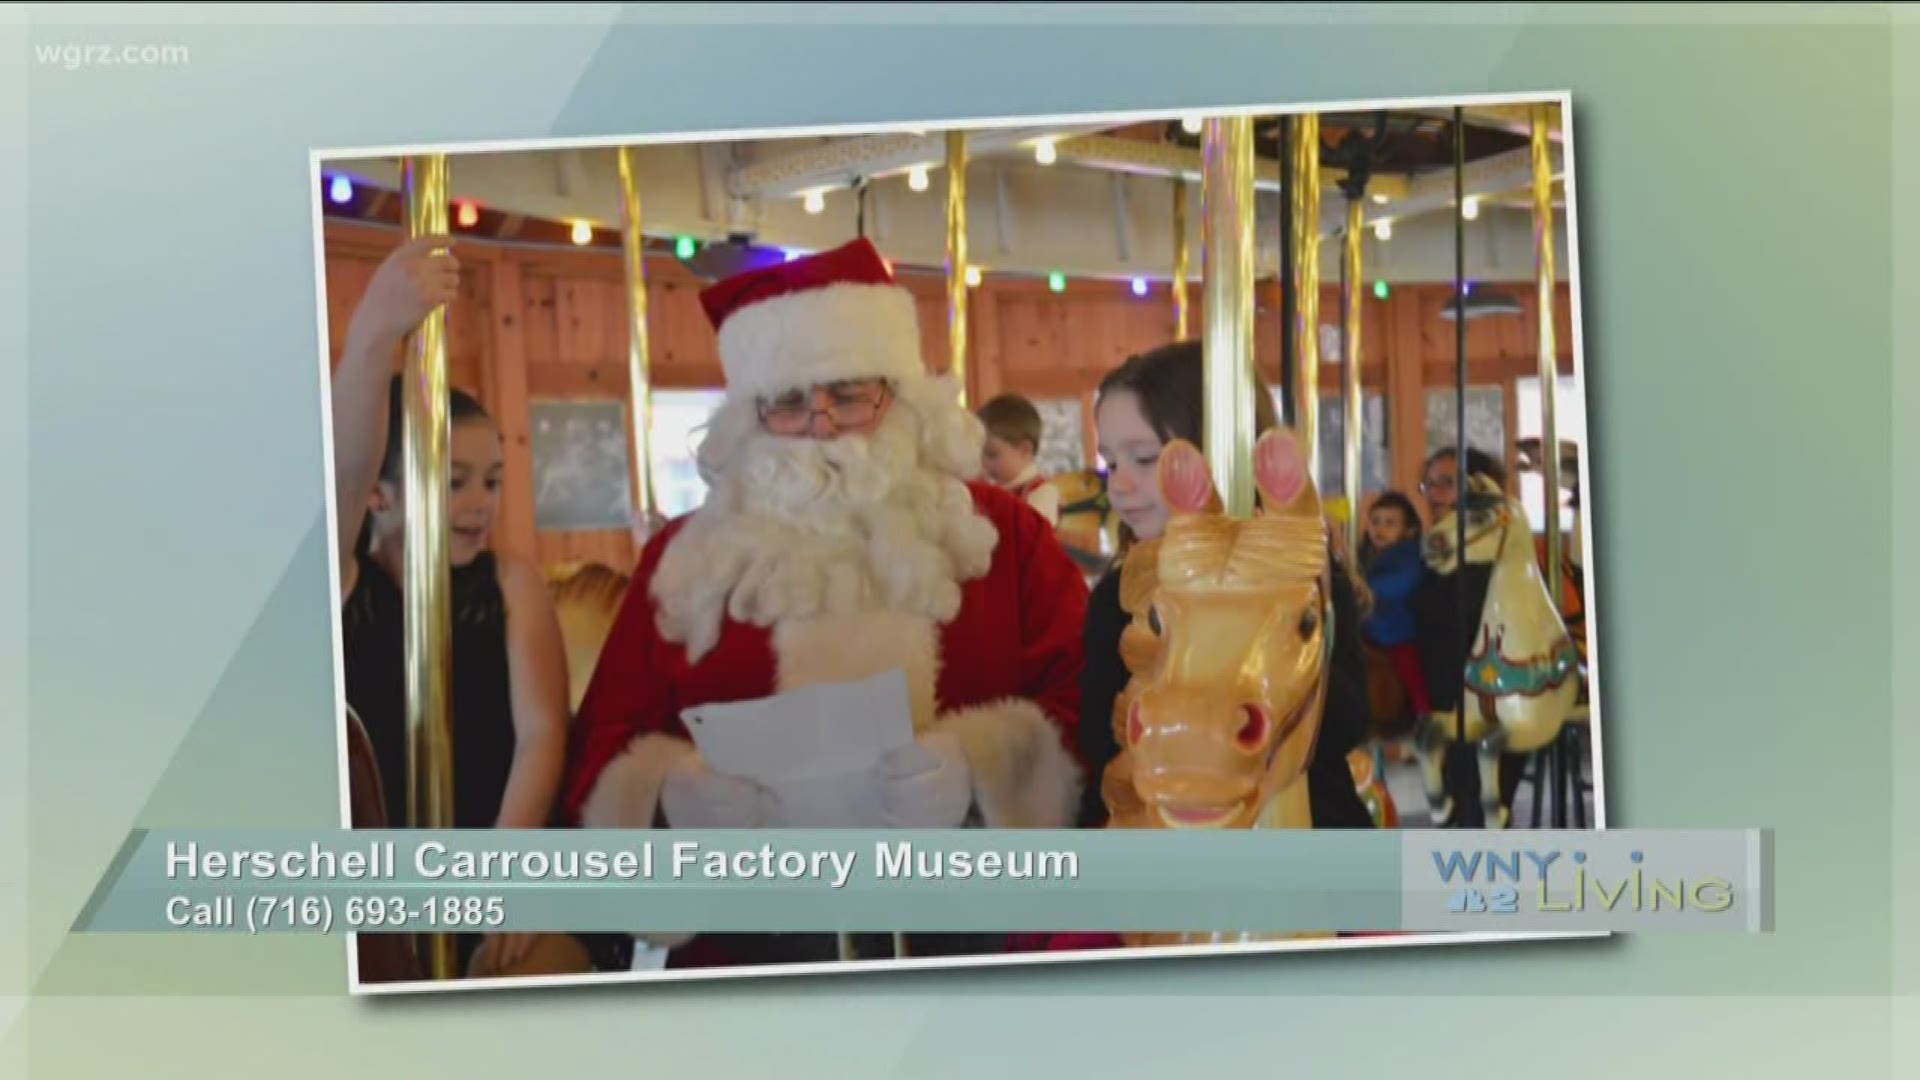 November 30 - Herschell Carrousel Factory Museum (THIS VIDEO IS SPONSORED BY HERSCHELL CARROUSEL FACTORY MUSEUM)